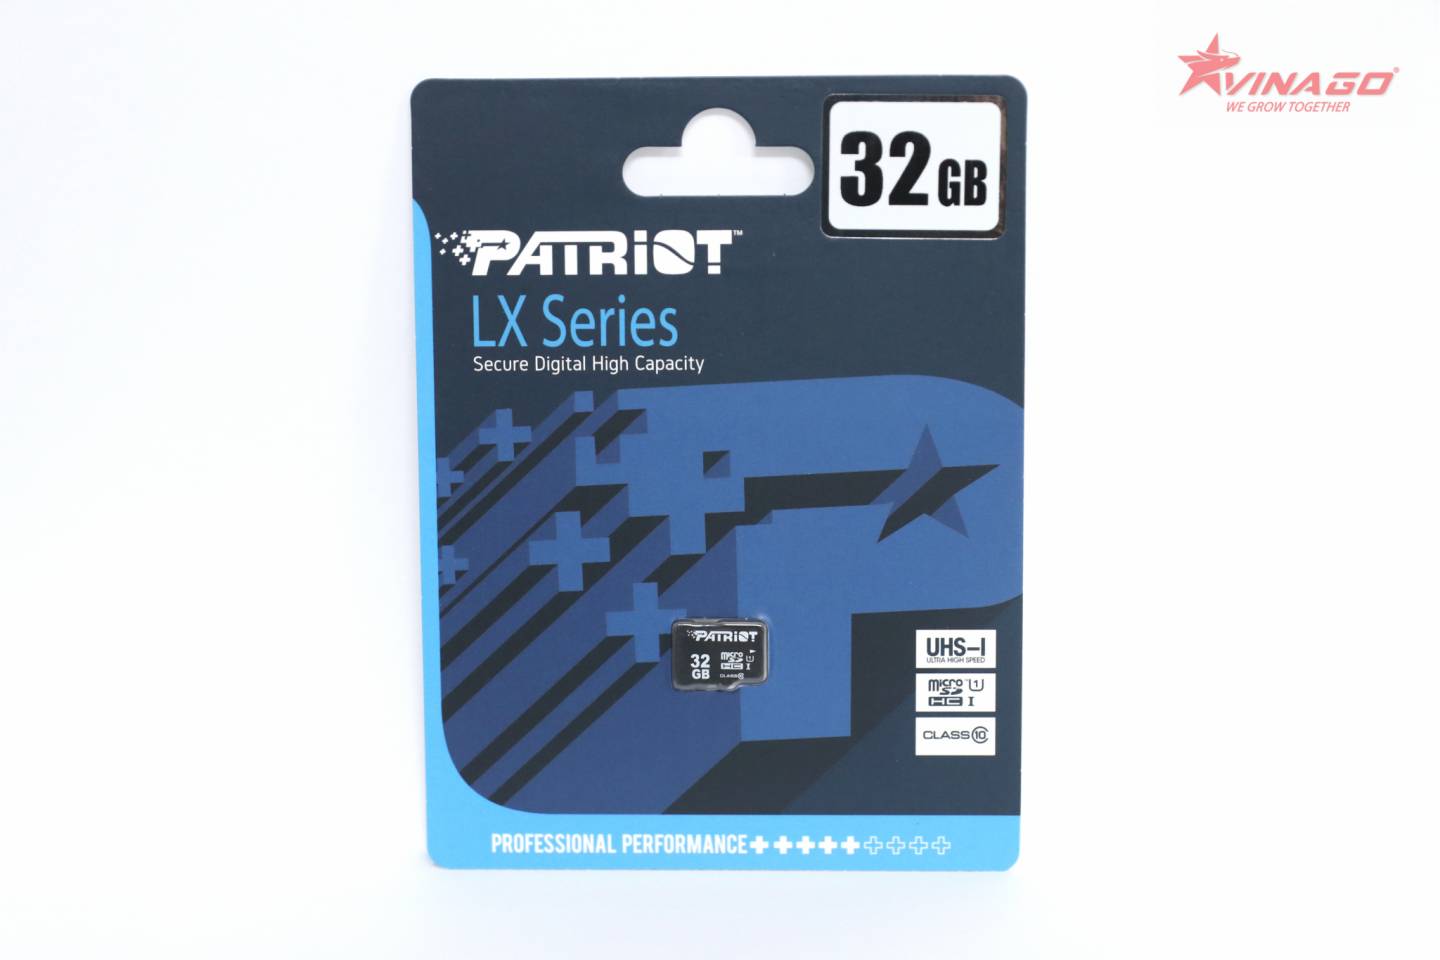 CARTÃO MICRO SD 32GB CLASSE 10 SDHC UHS-I LX SERIES PATRIOT - Express  Informática, sempre o preço mais barato.